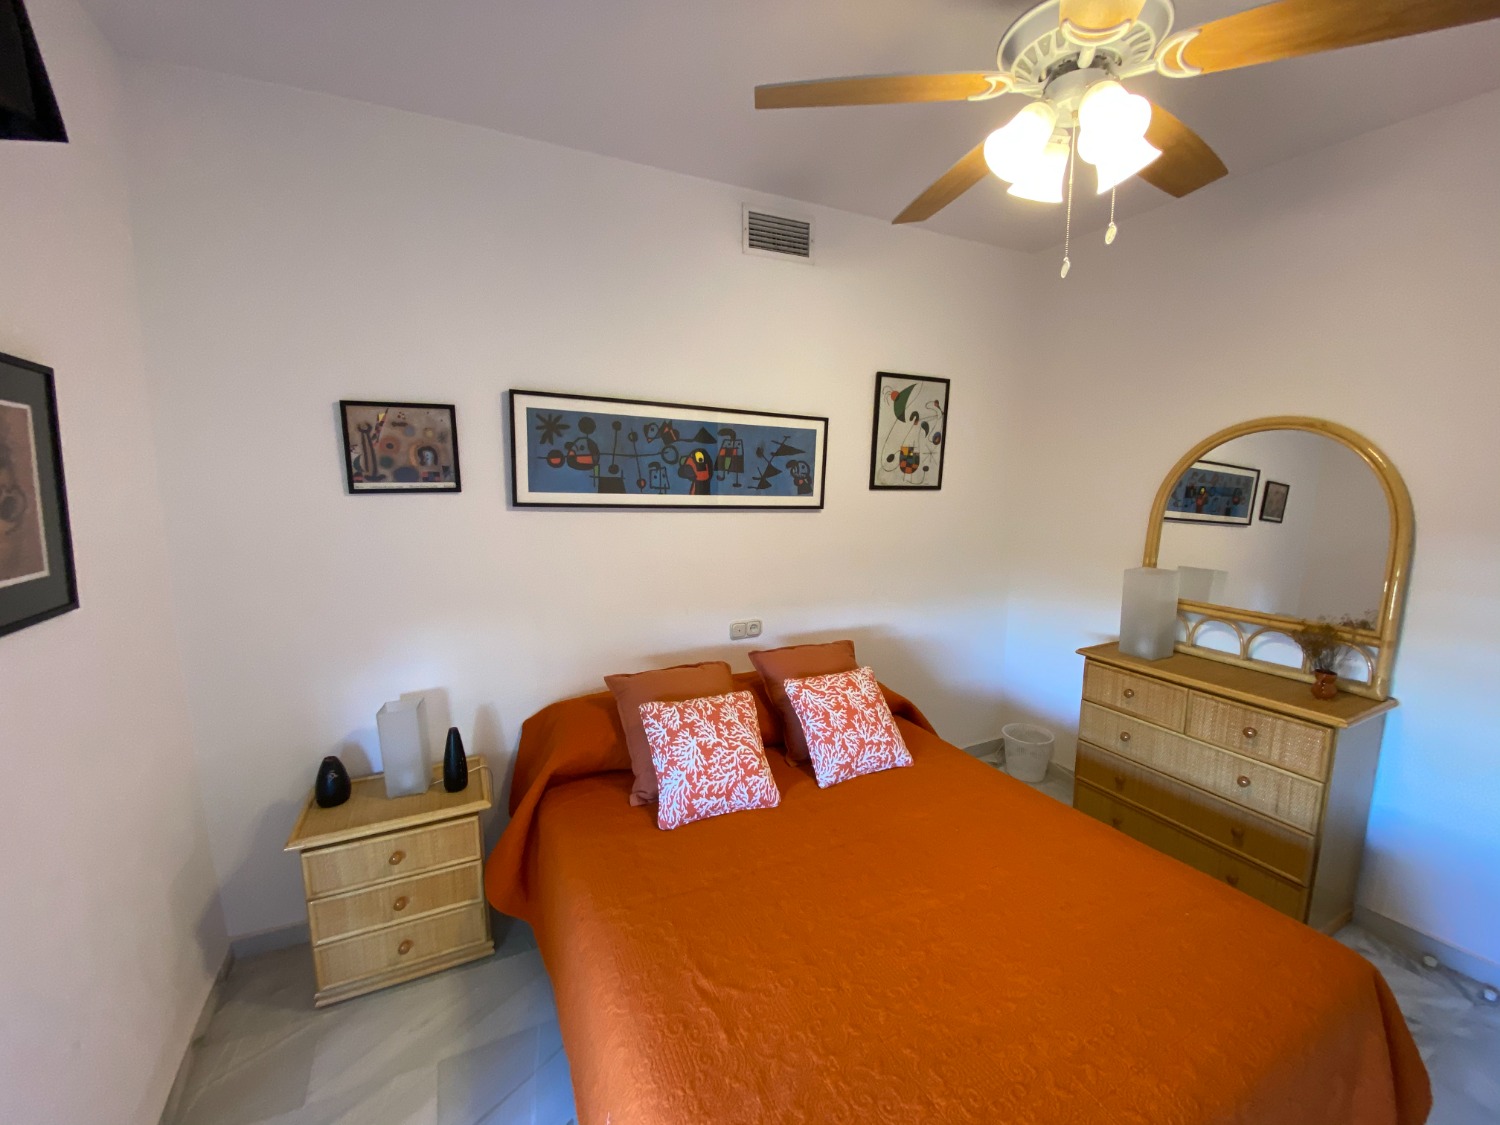 Het is uw strandhuis, in Fuengirola, 3 slaapkamers, wifi, airconditioning, geniet ervan.